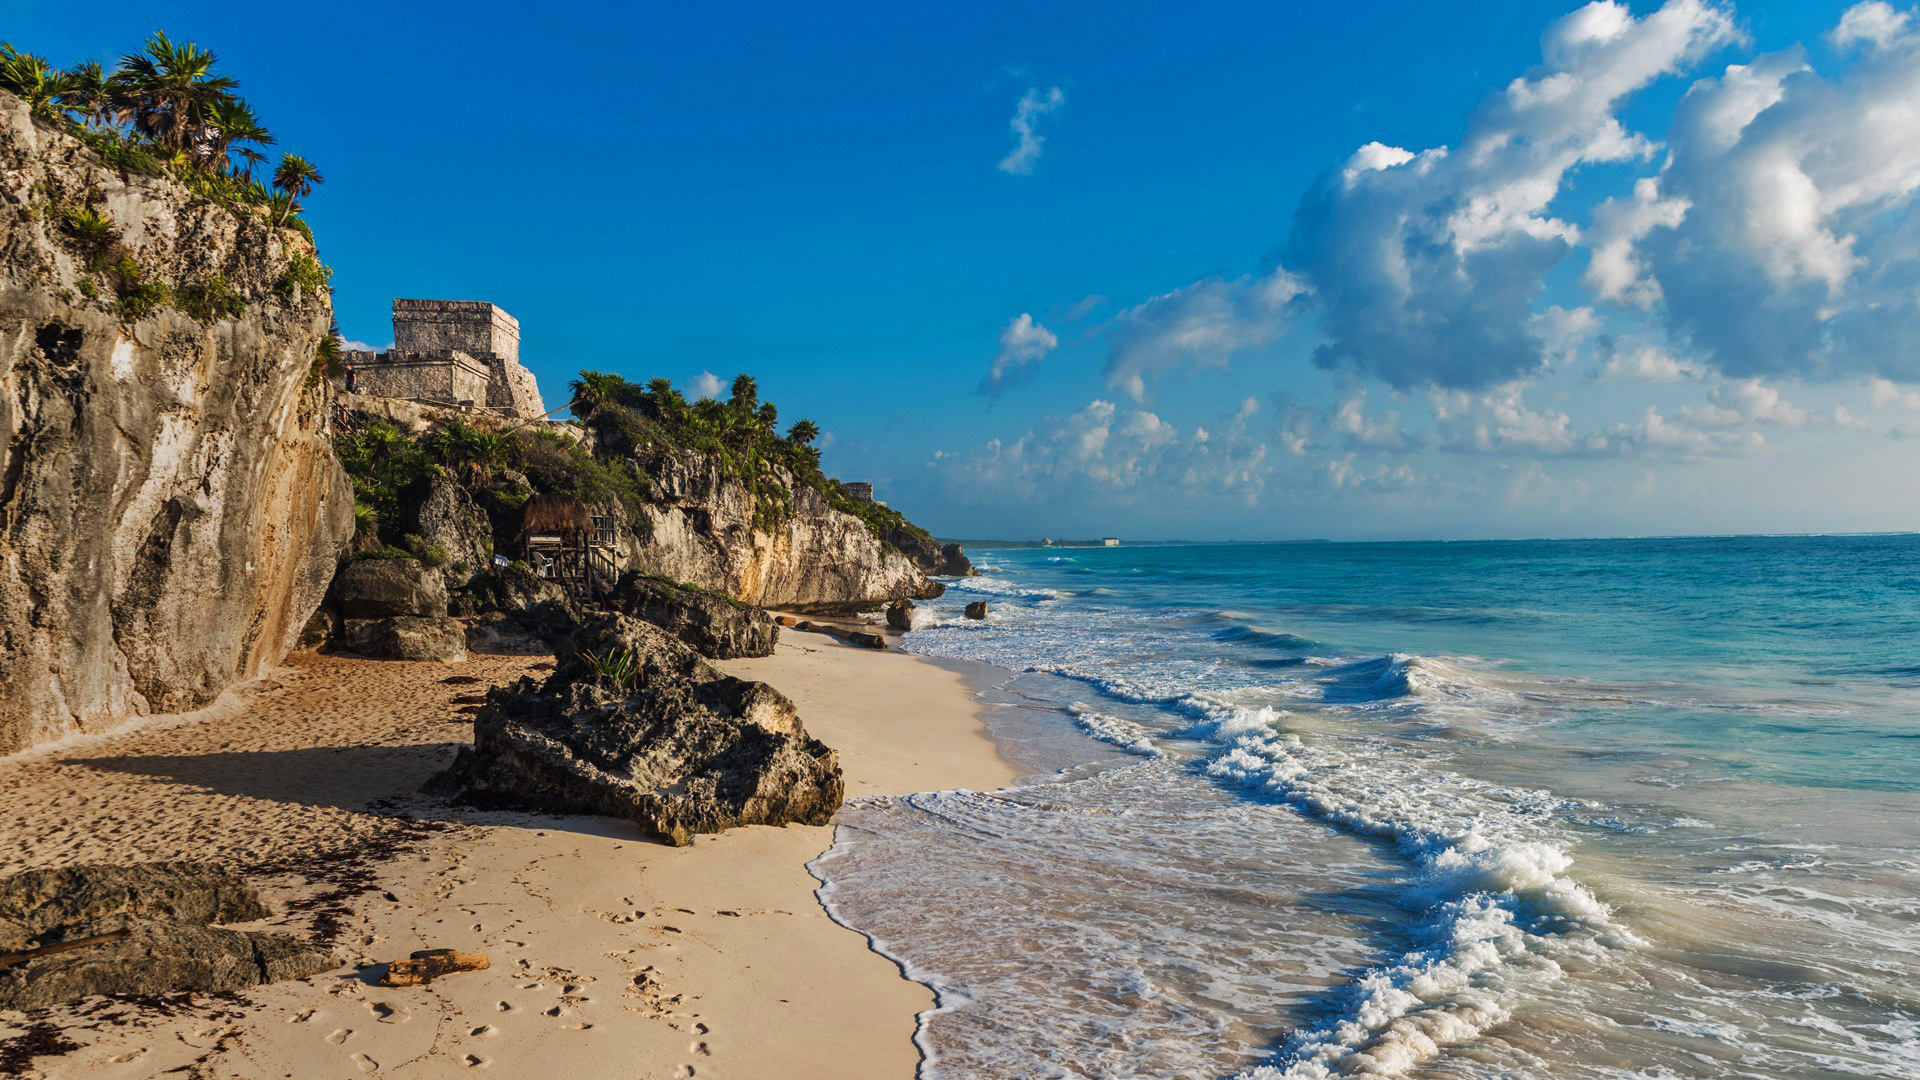 Mayan ruins, Tulum Mexico, Caribbean sea, Beach, 1920x1080 Full HD Desktop